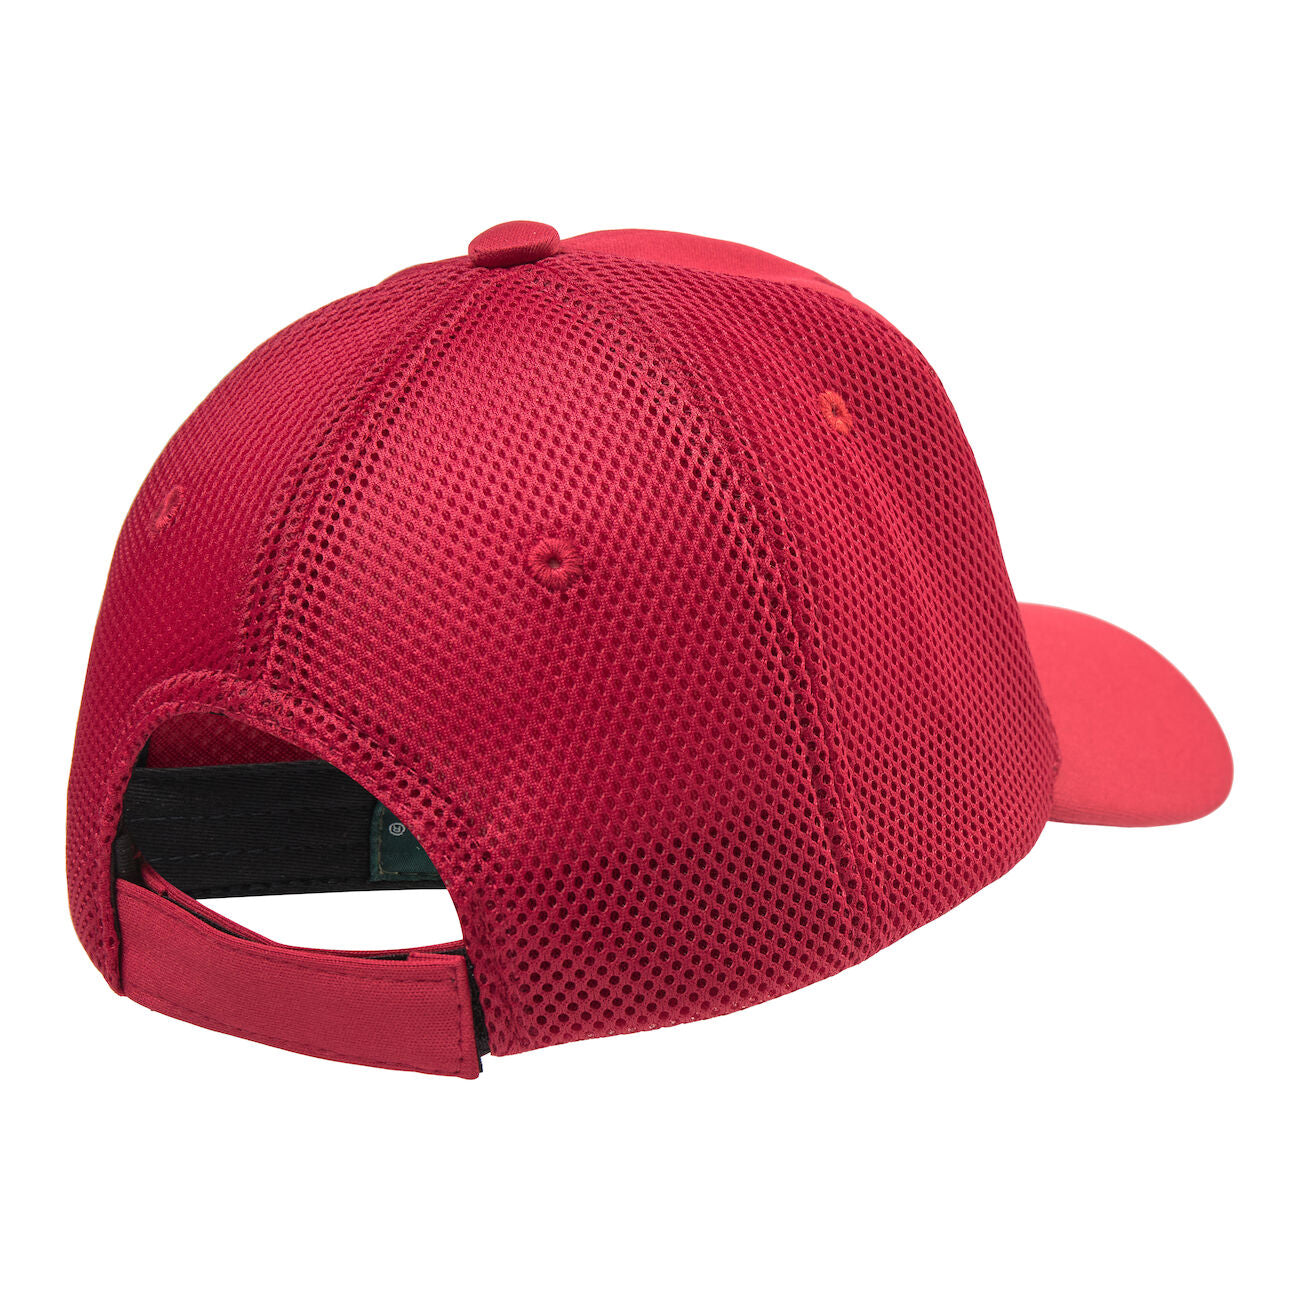 Deerhunter Mesh Cap - Red - One Size